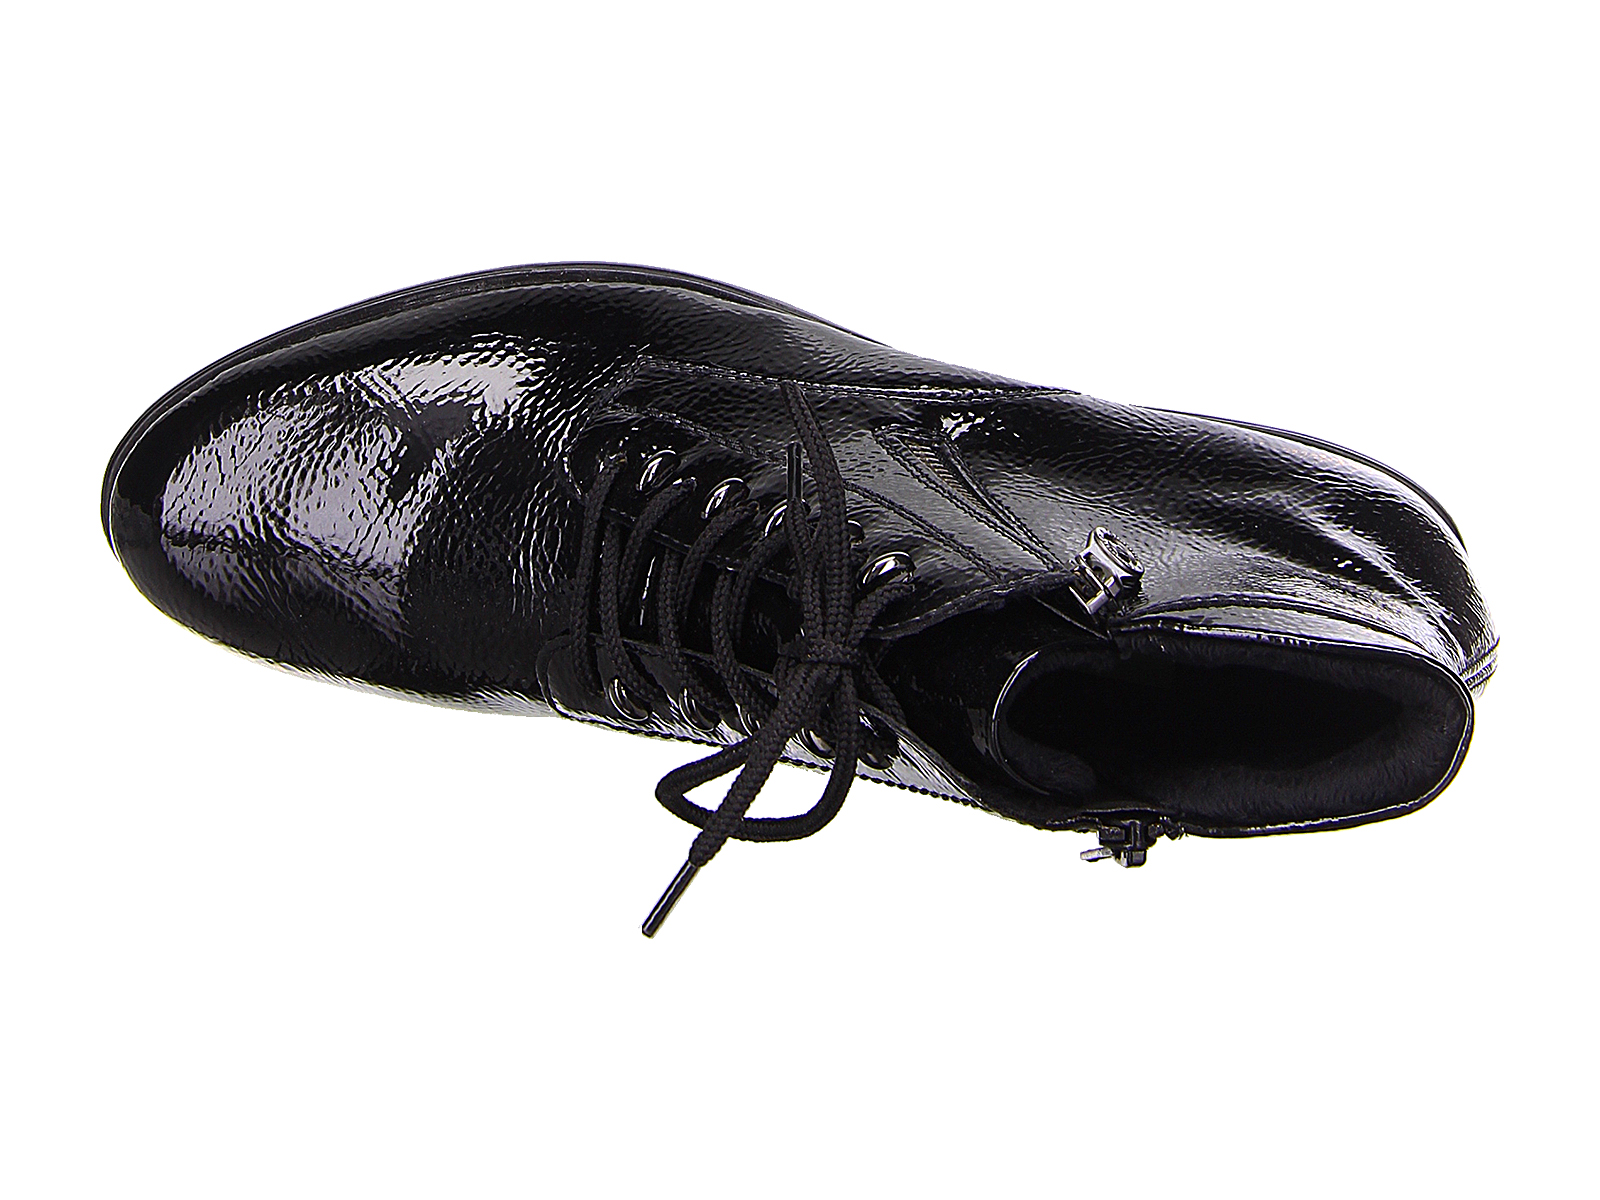 Schuhe Stiefeletten 37 sehr gut schwarz aus Leder \u2b50 \u2b50 Remonte Stiefeletten Gr 